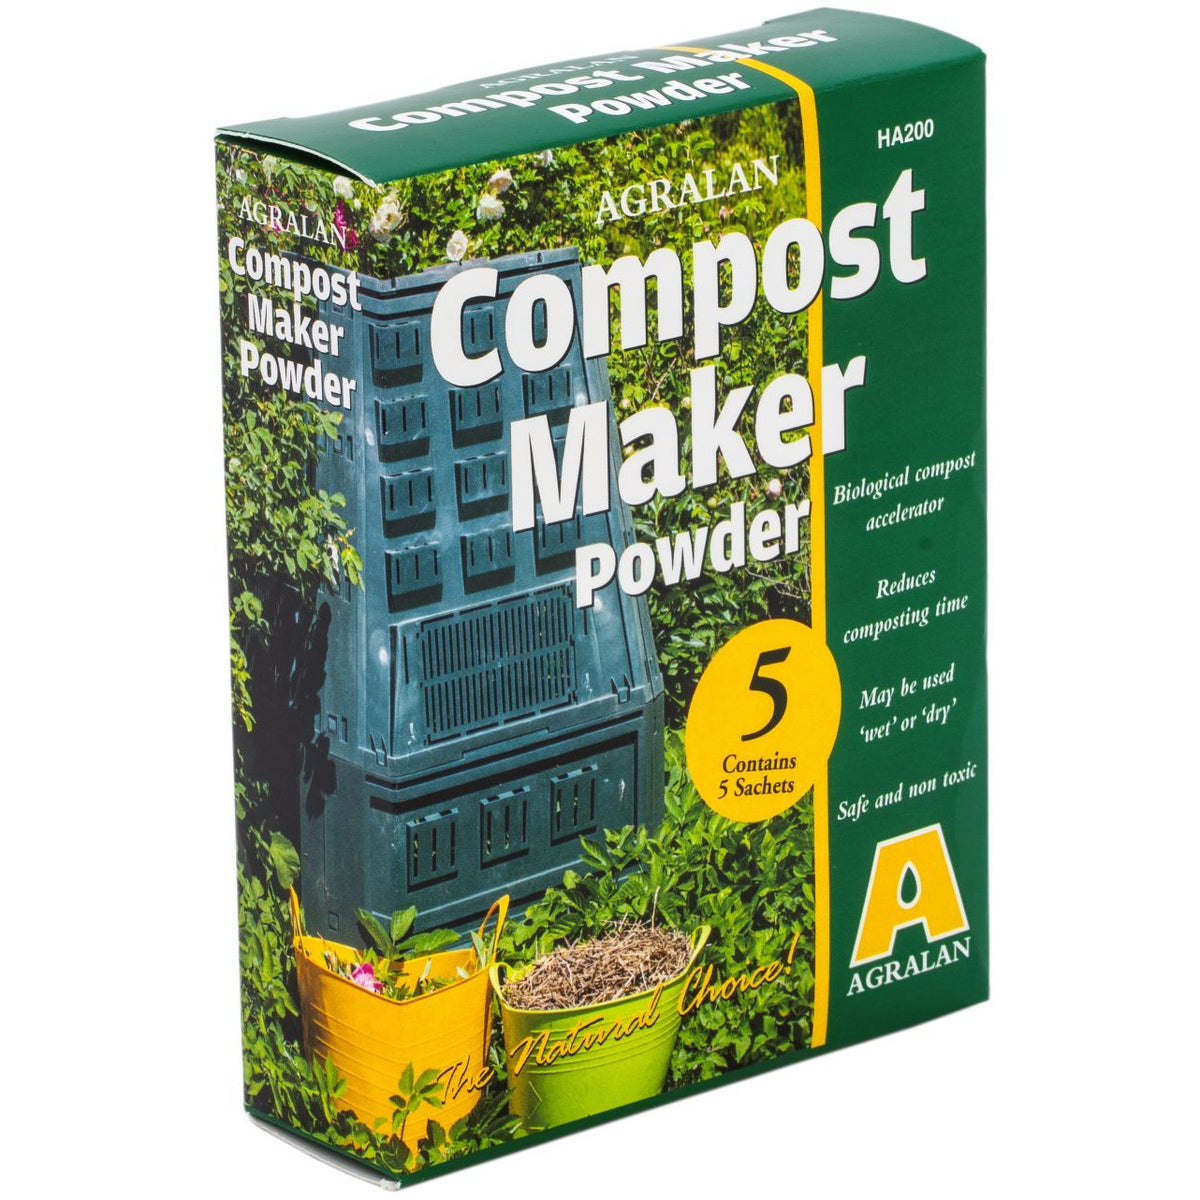 Accélérateur de compost Gardol (5 kg, contenu suffisant pour: 6 m³)